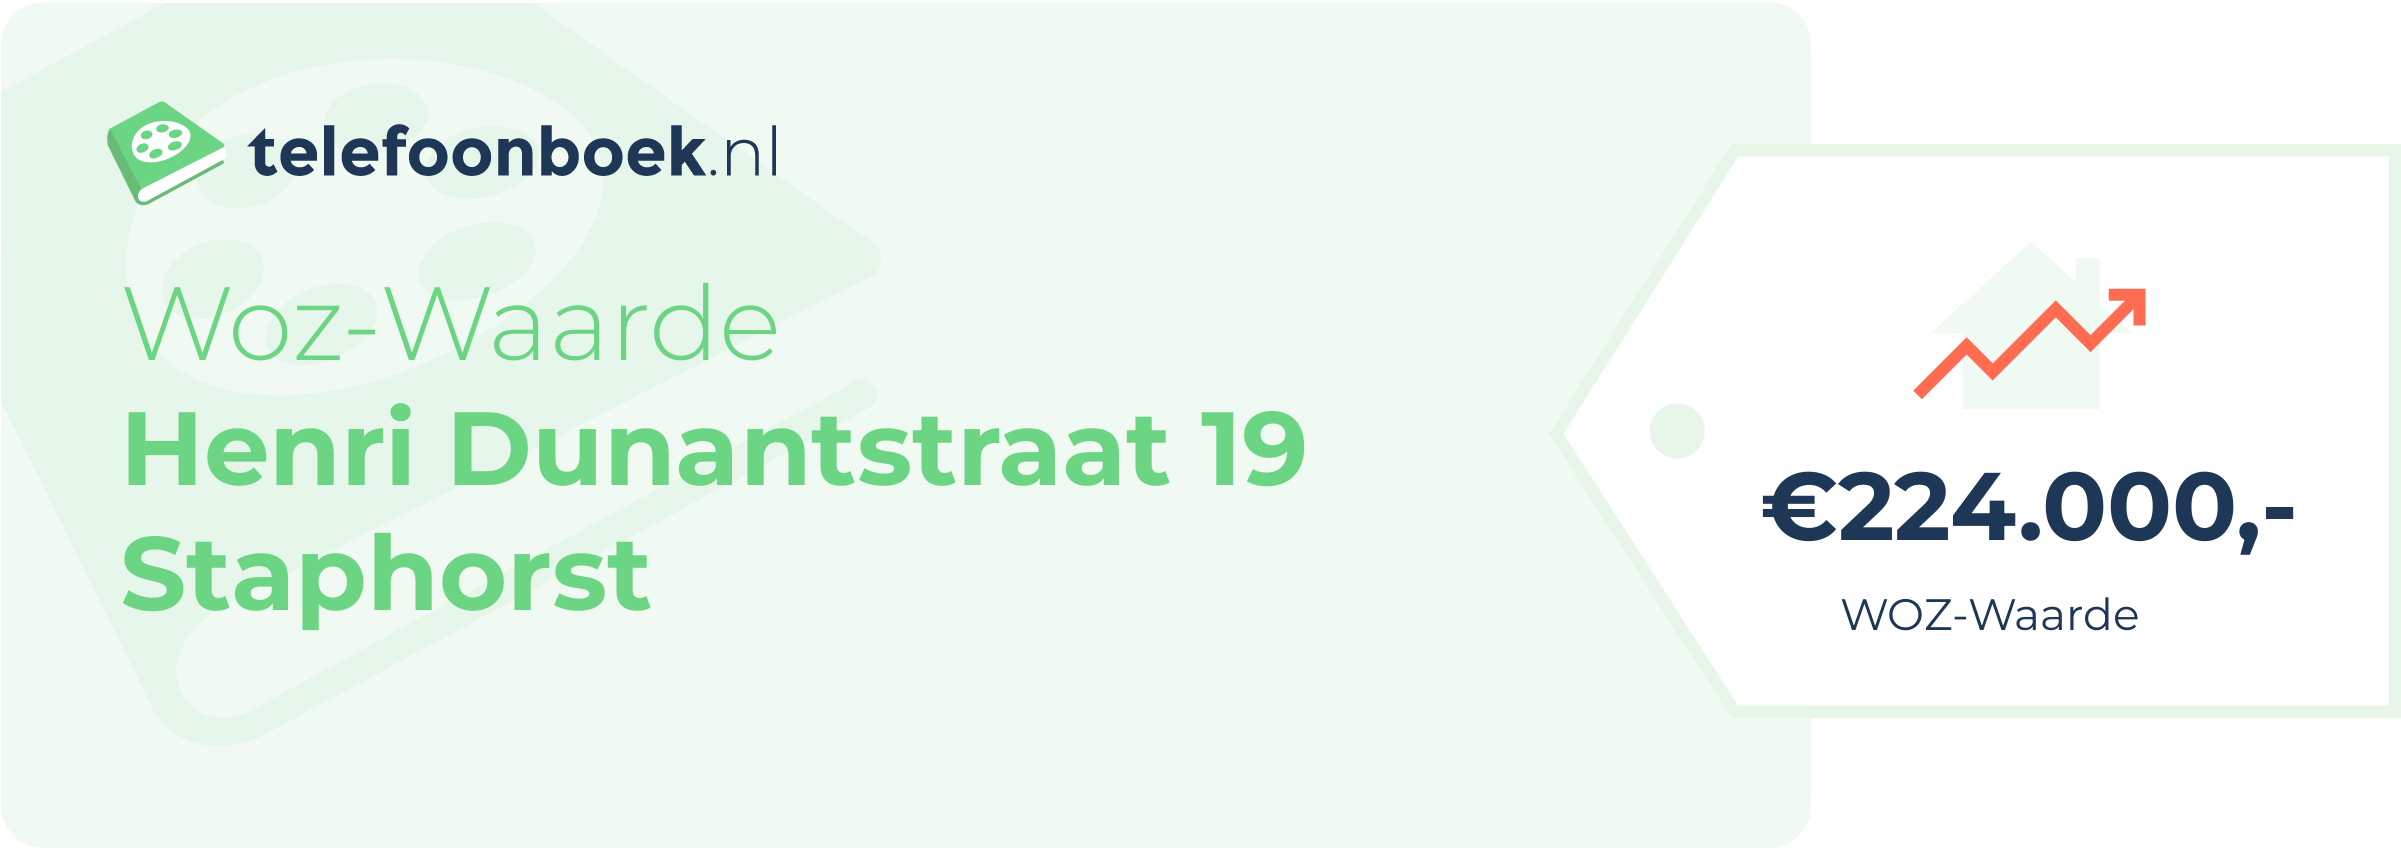 WOZ-waarde Henri Dunantstraat 19 Staphorst